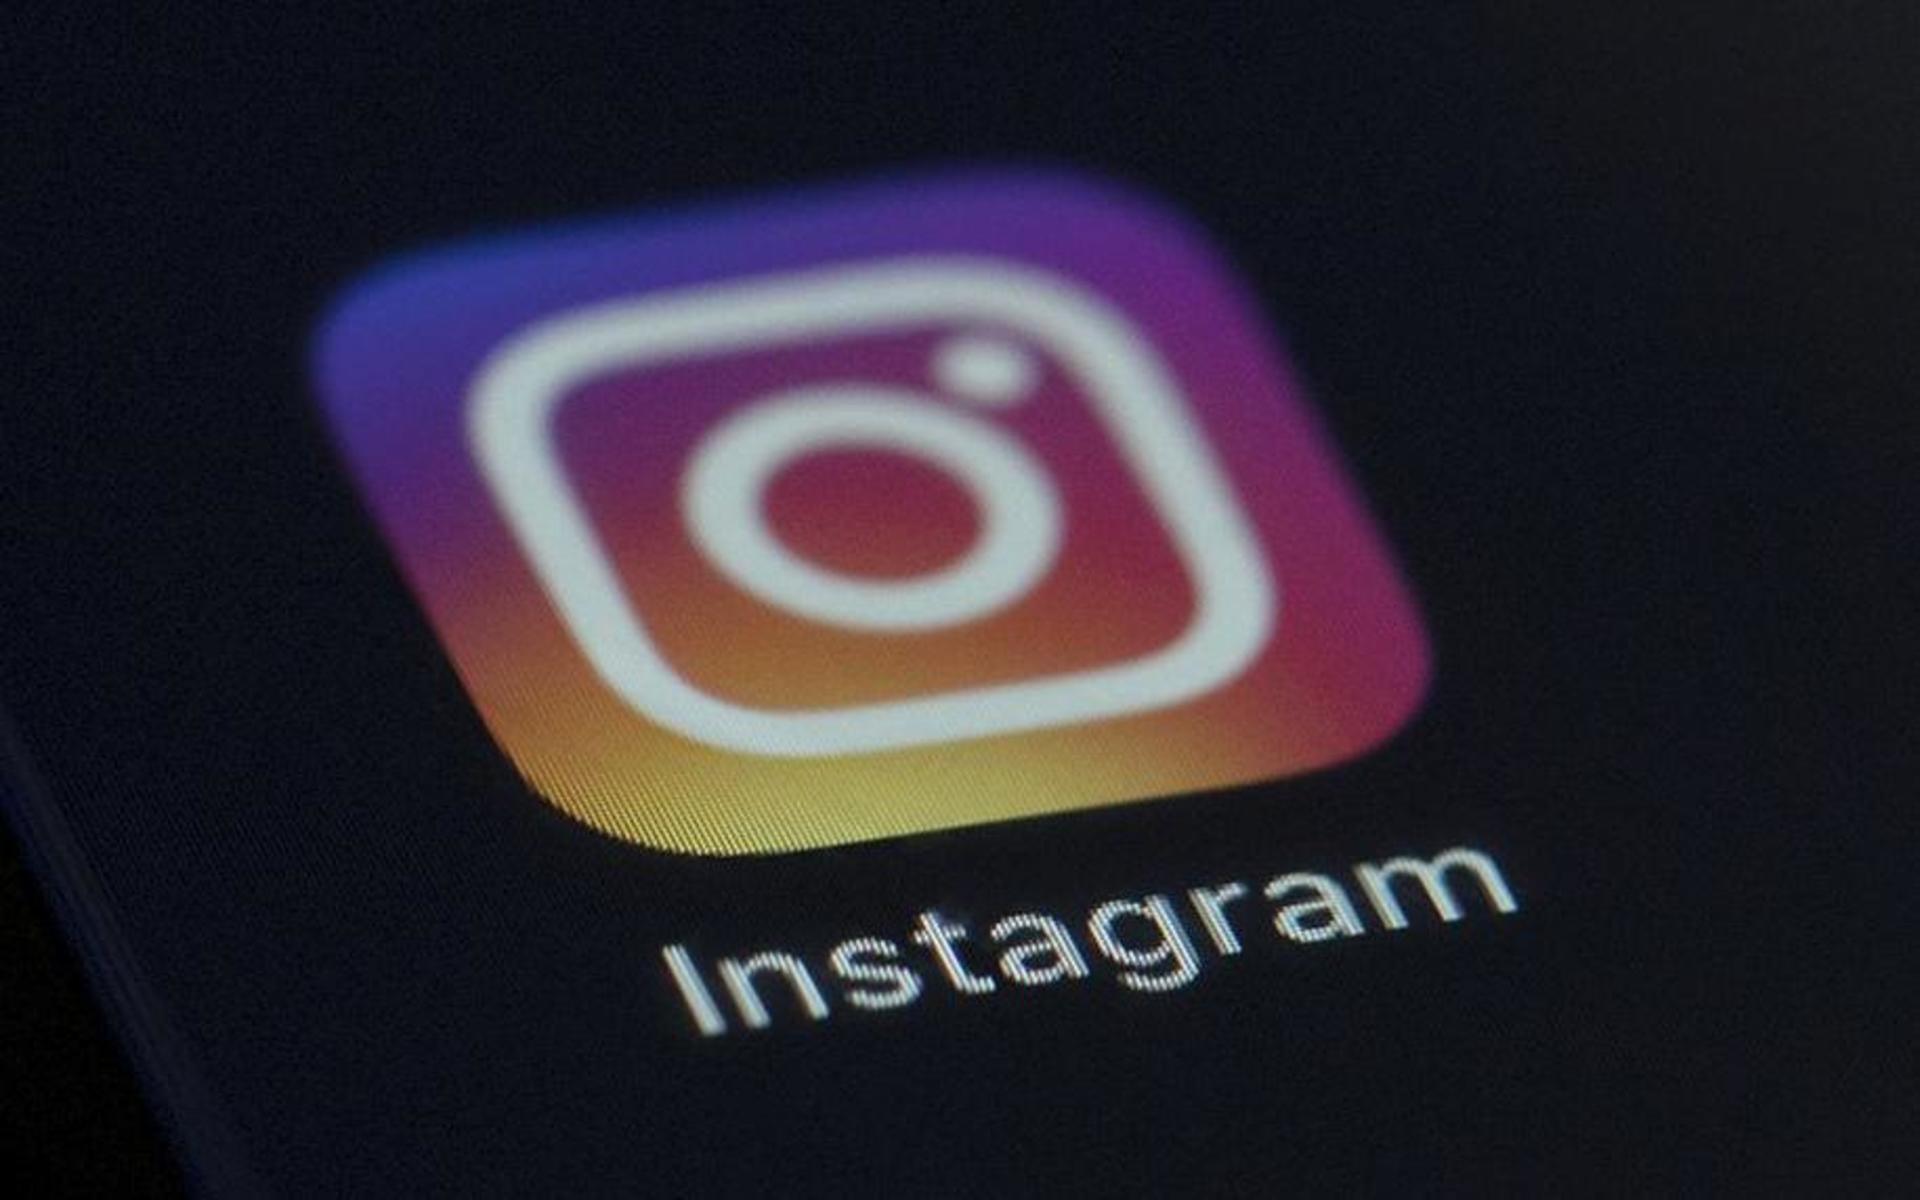 Appen Instagram fyller tio år i år, och har förändrat hela vår bildkulturen under det senaste decenniet. 